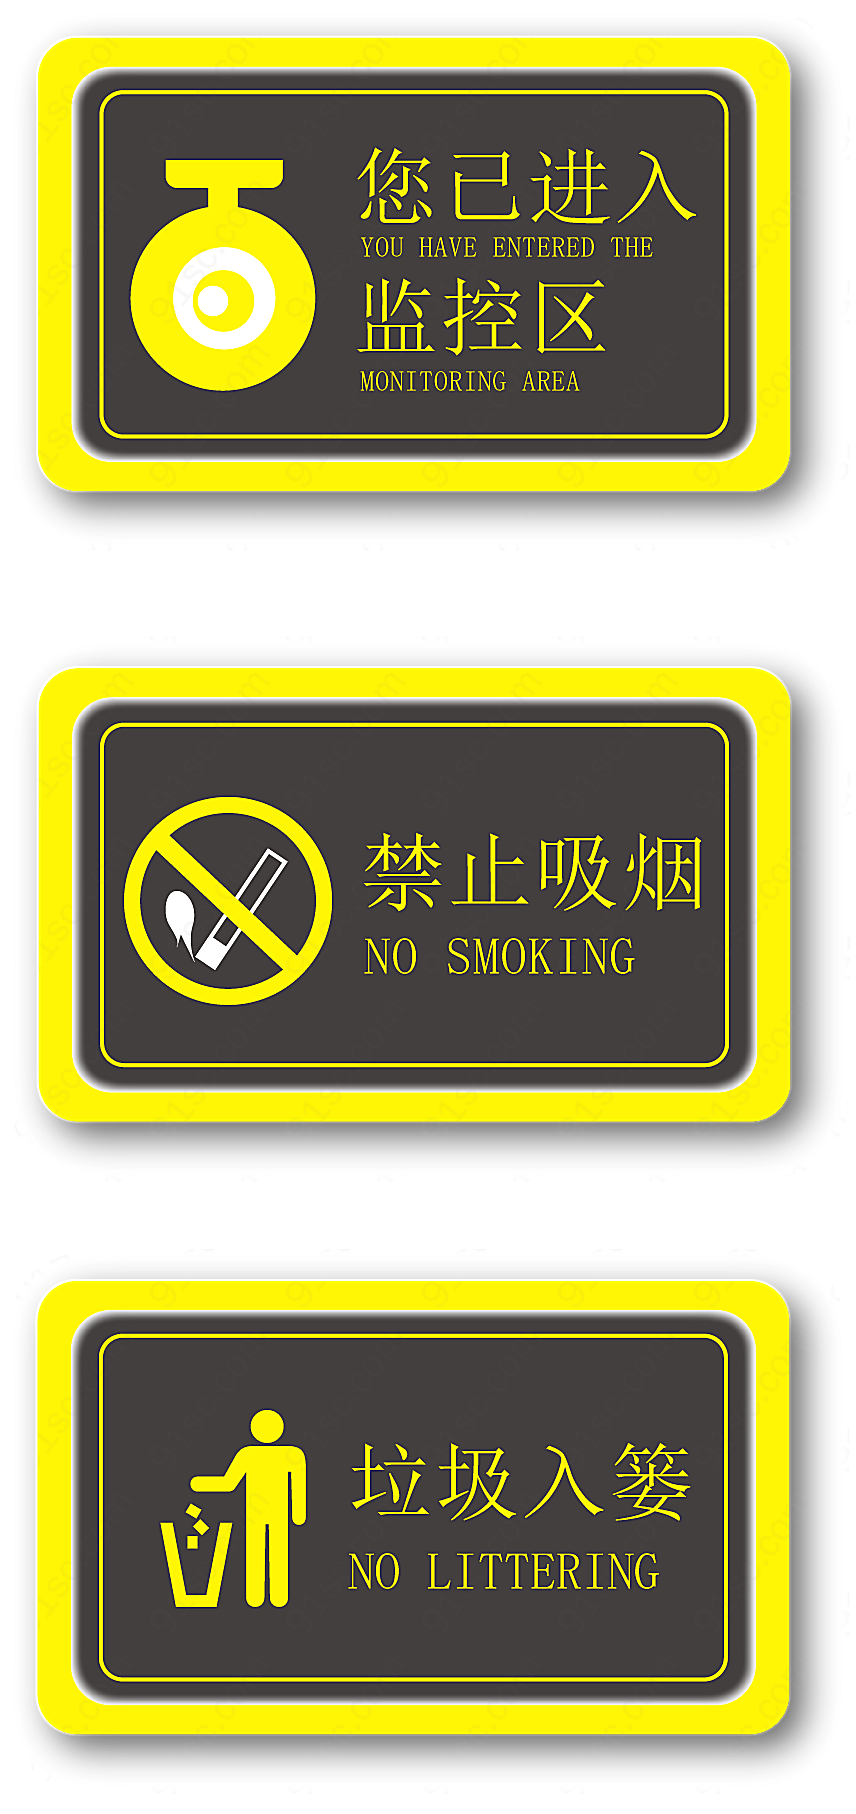 禁止吸烟垃圾入篓监控区导视牌标识手绘设计